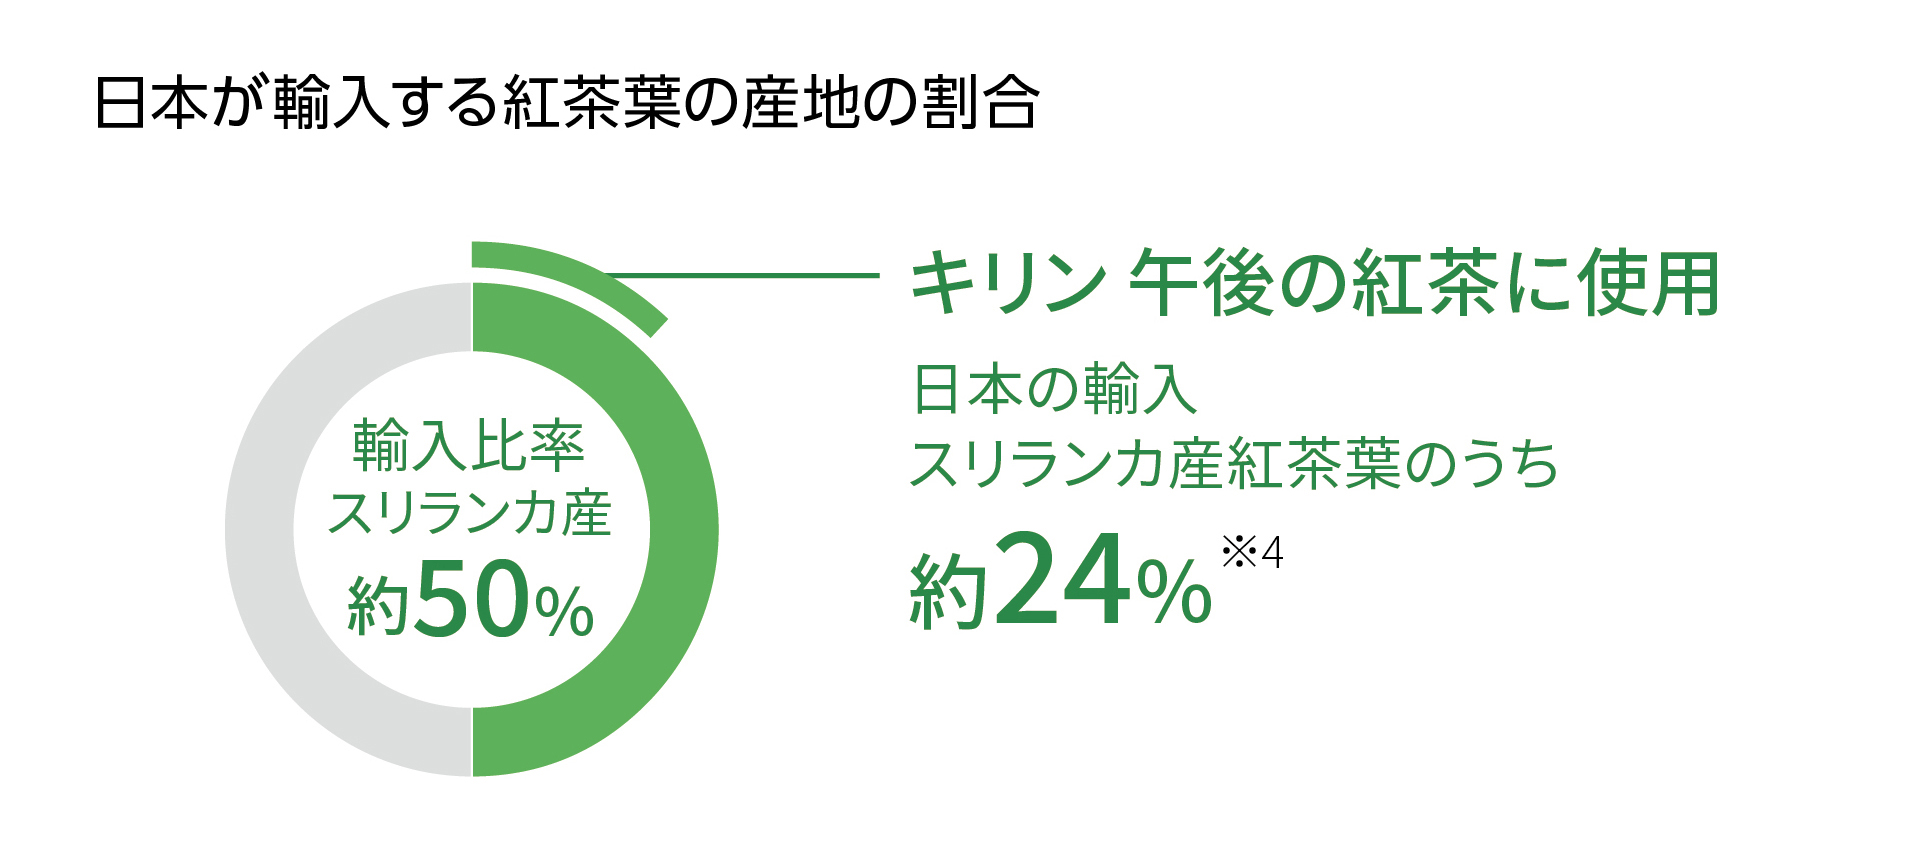 日本が輸入する紅茶葉の産地の割合